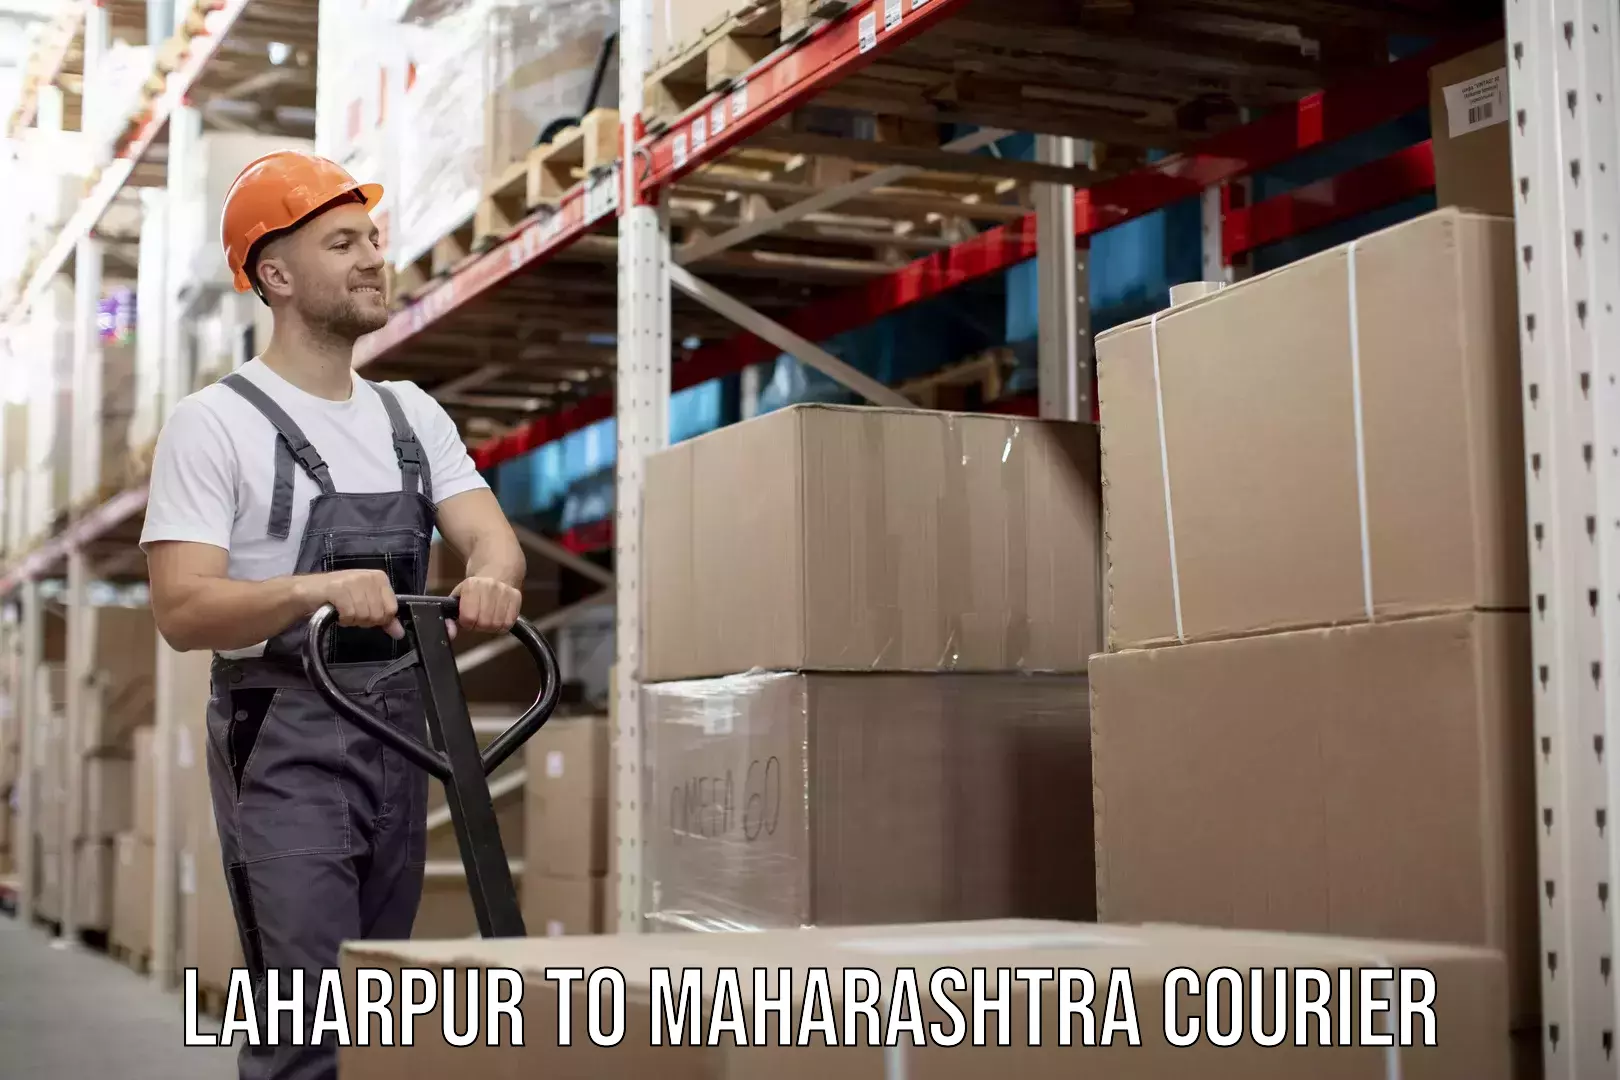 Furniture movers and packers Laharpur to Maharashtra